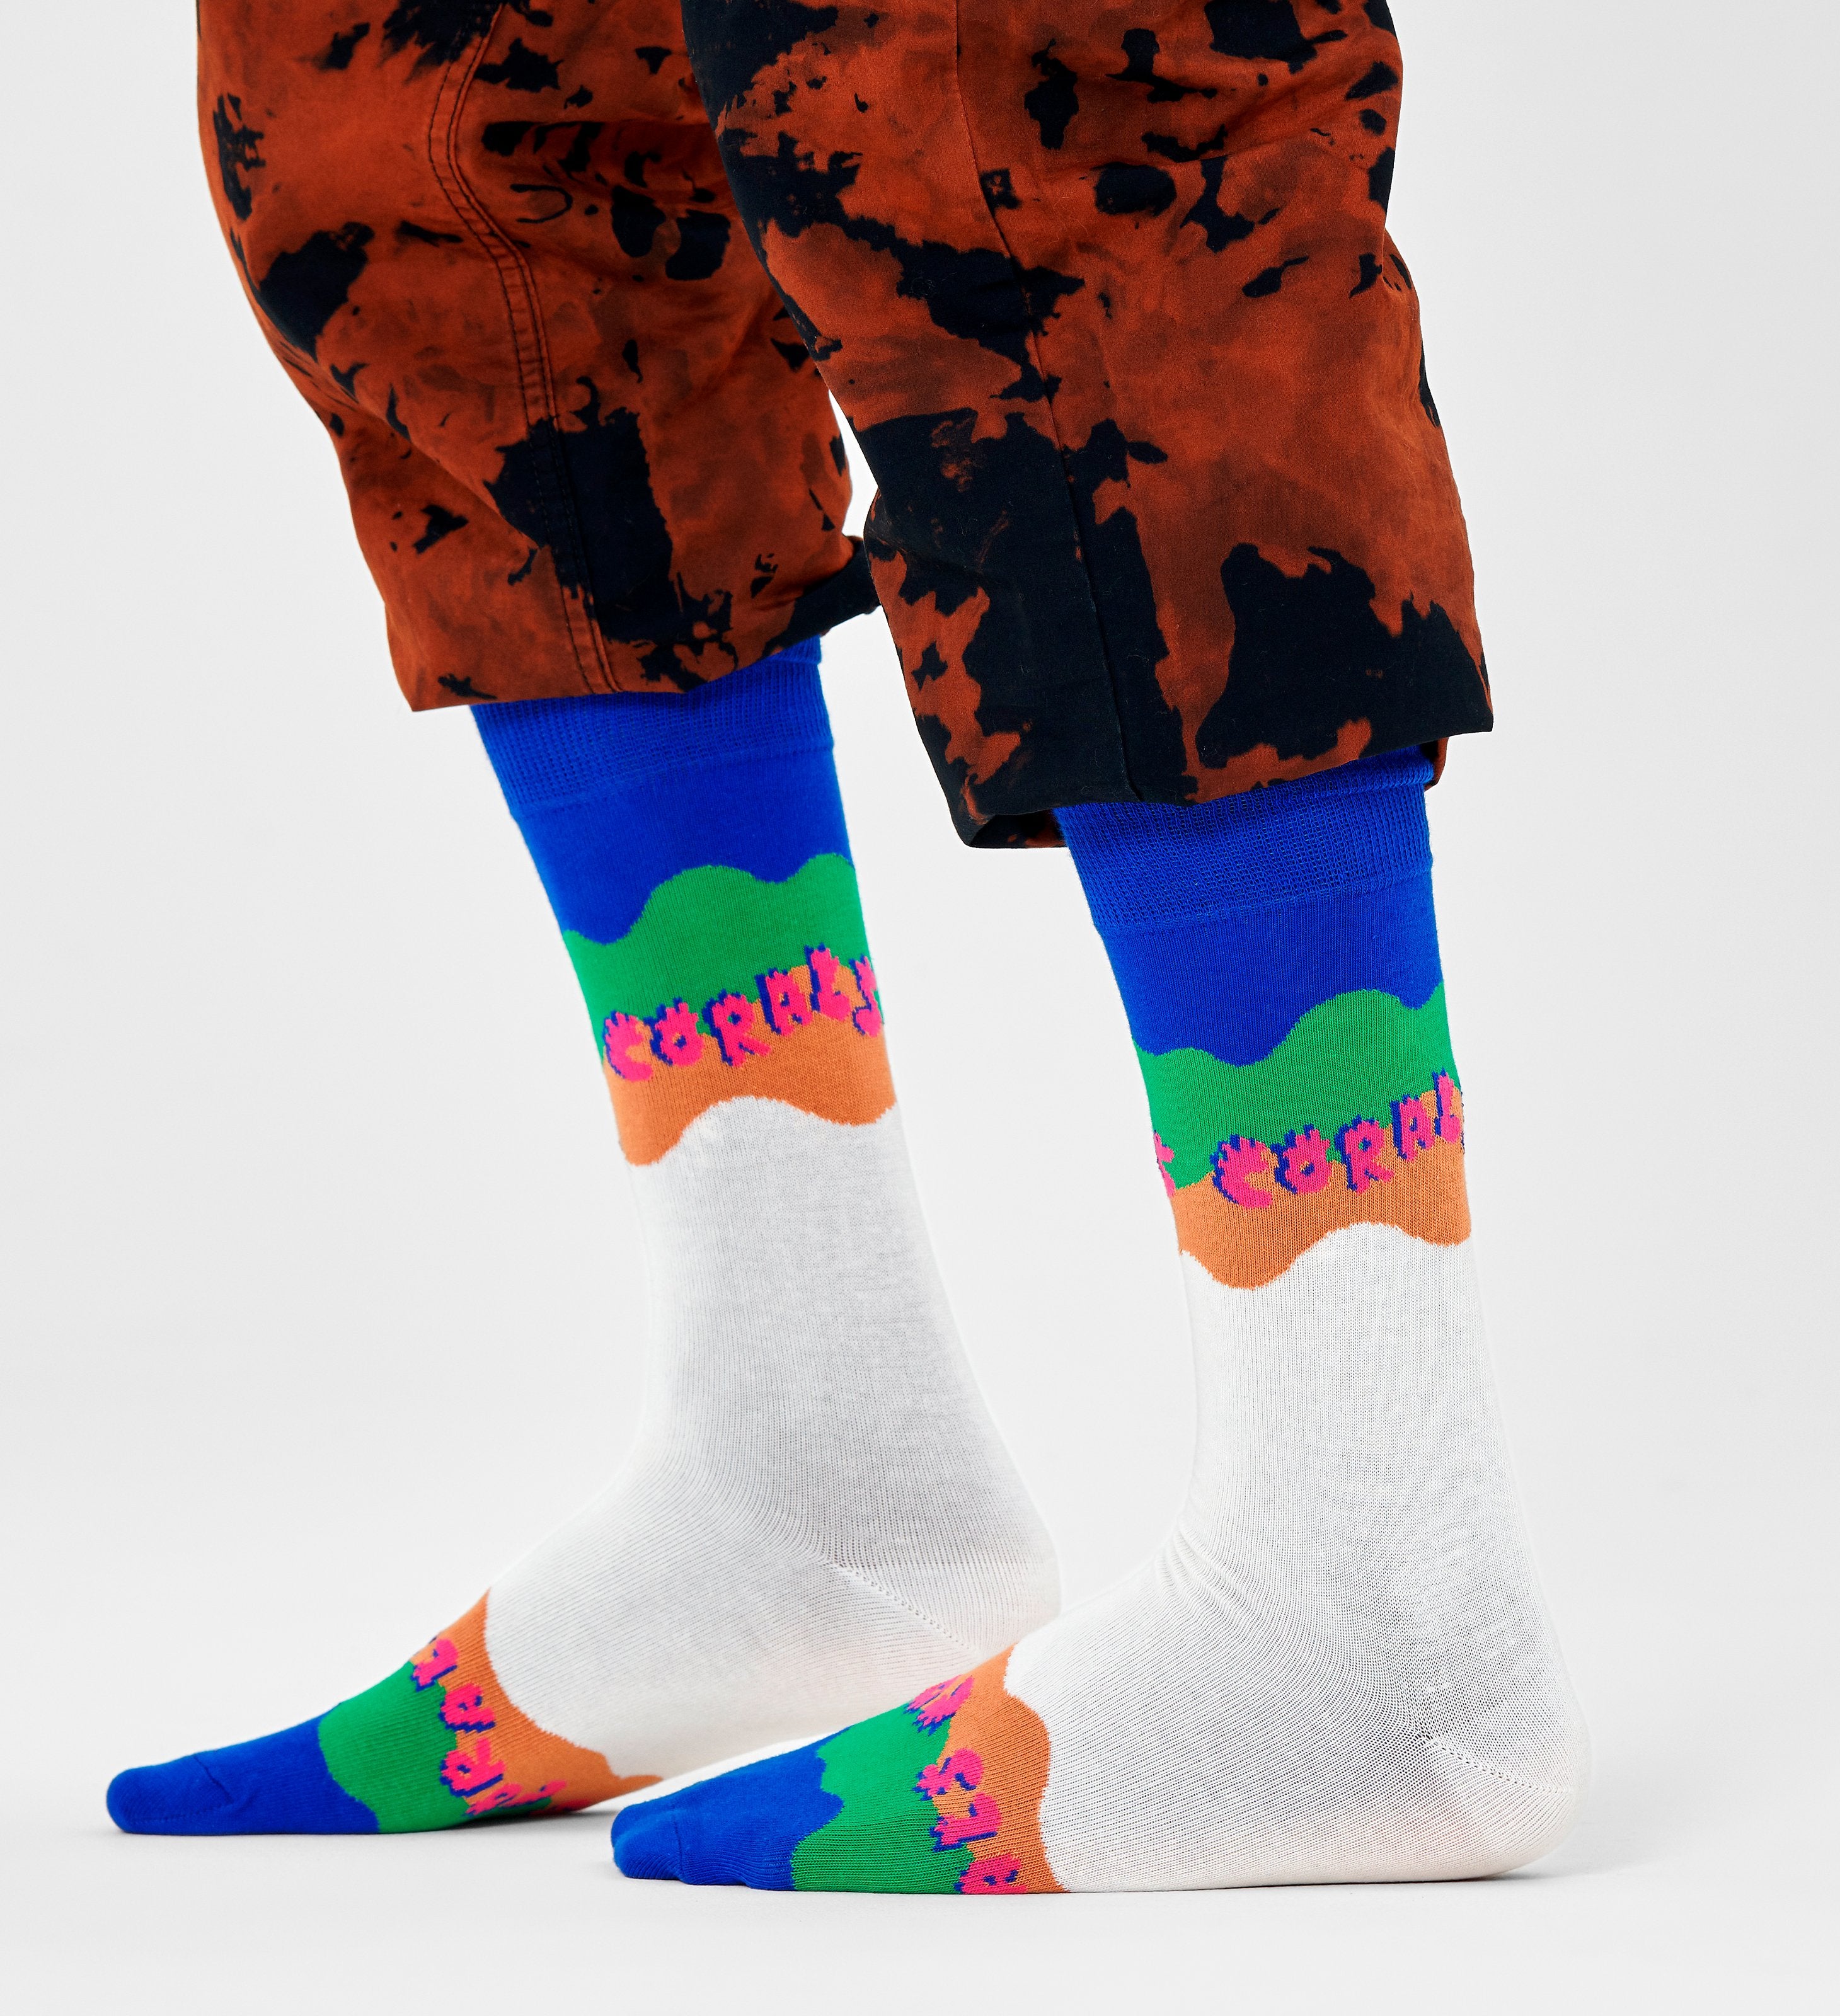 Farebné ponožky Happy Socks x WWF, vzor Coral Reef Rescue